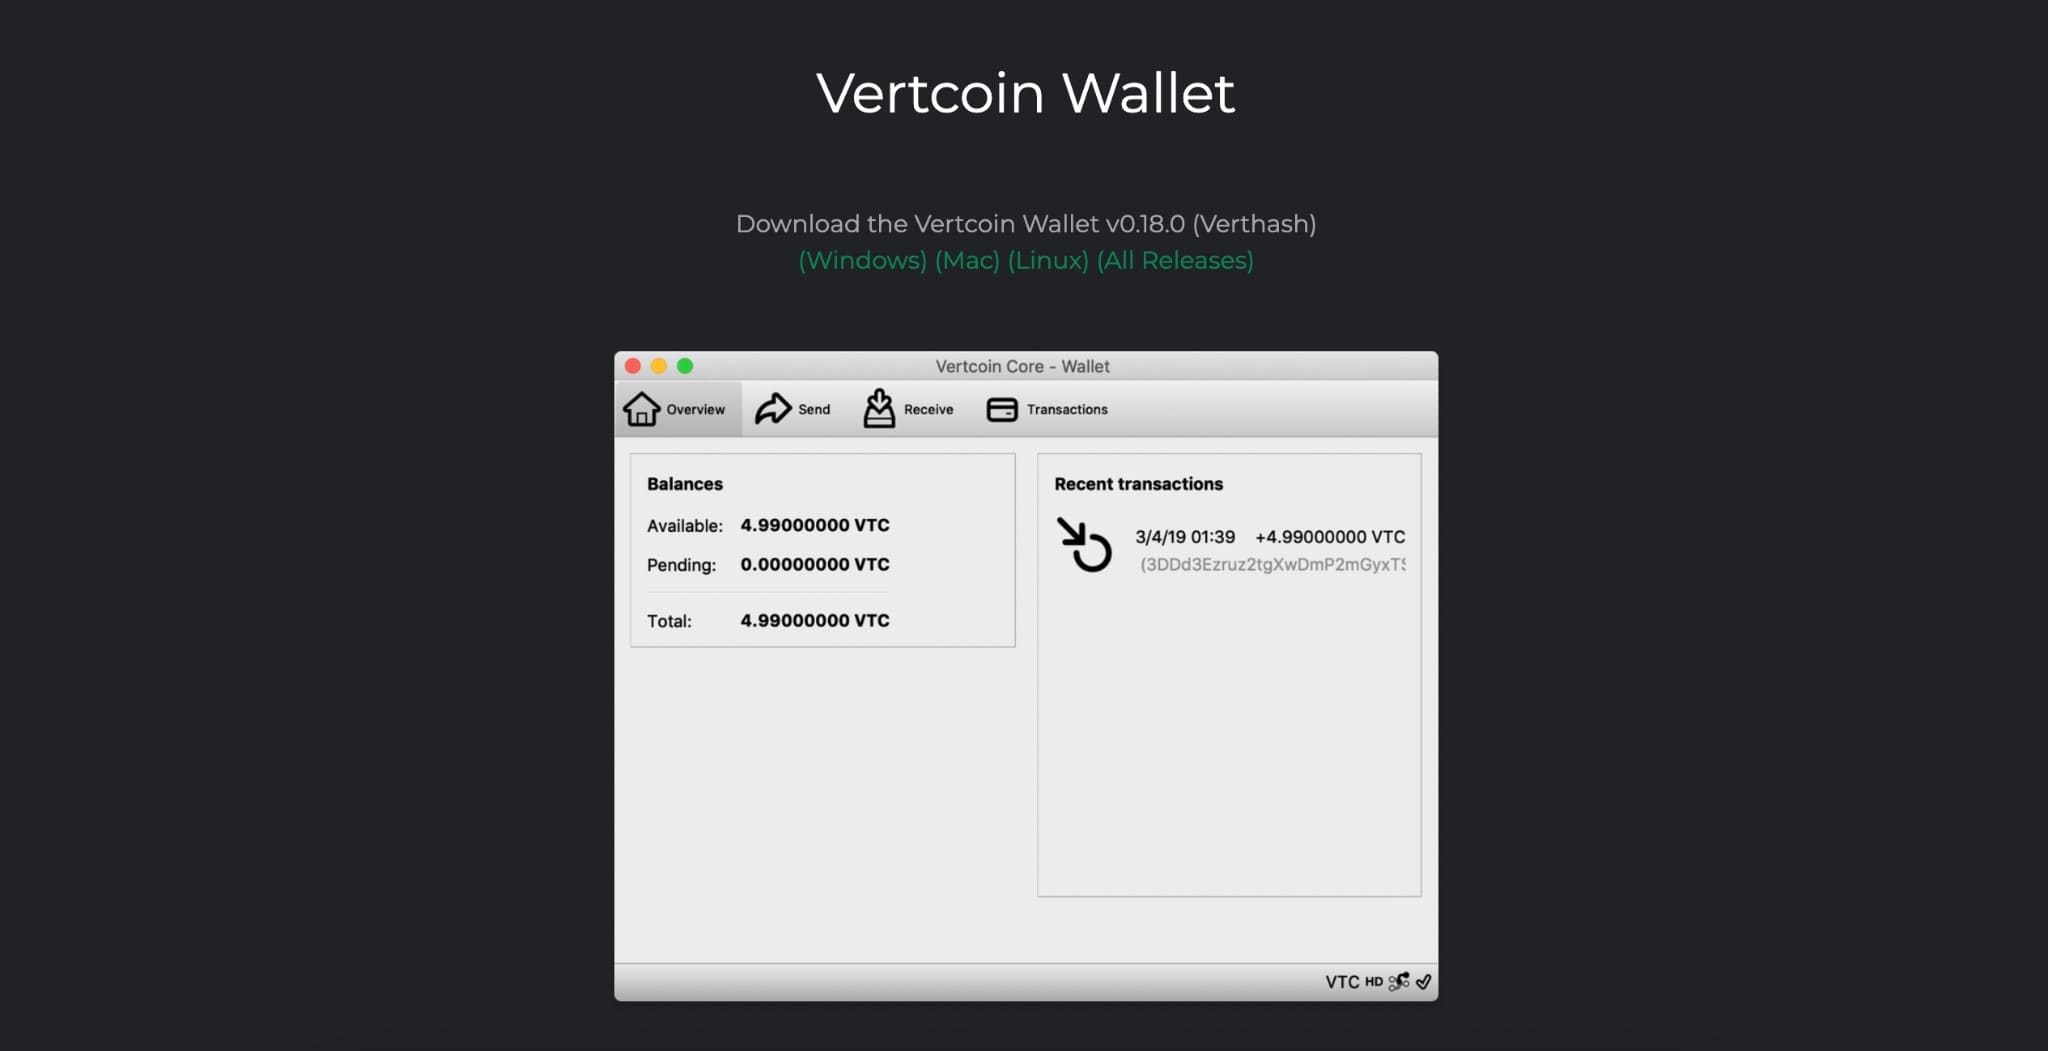 Vertcoin wallet